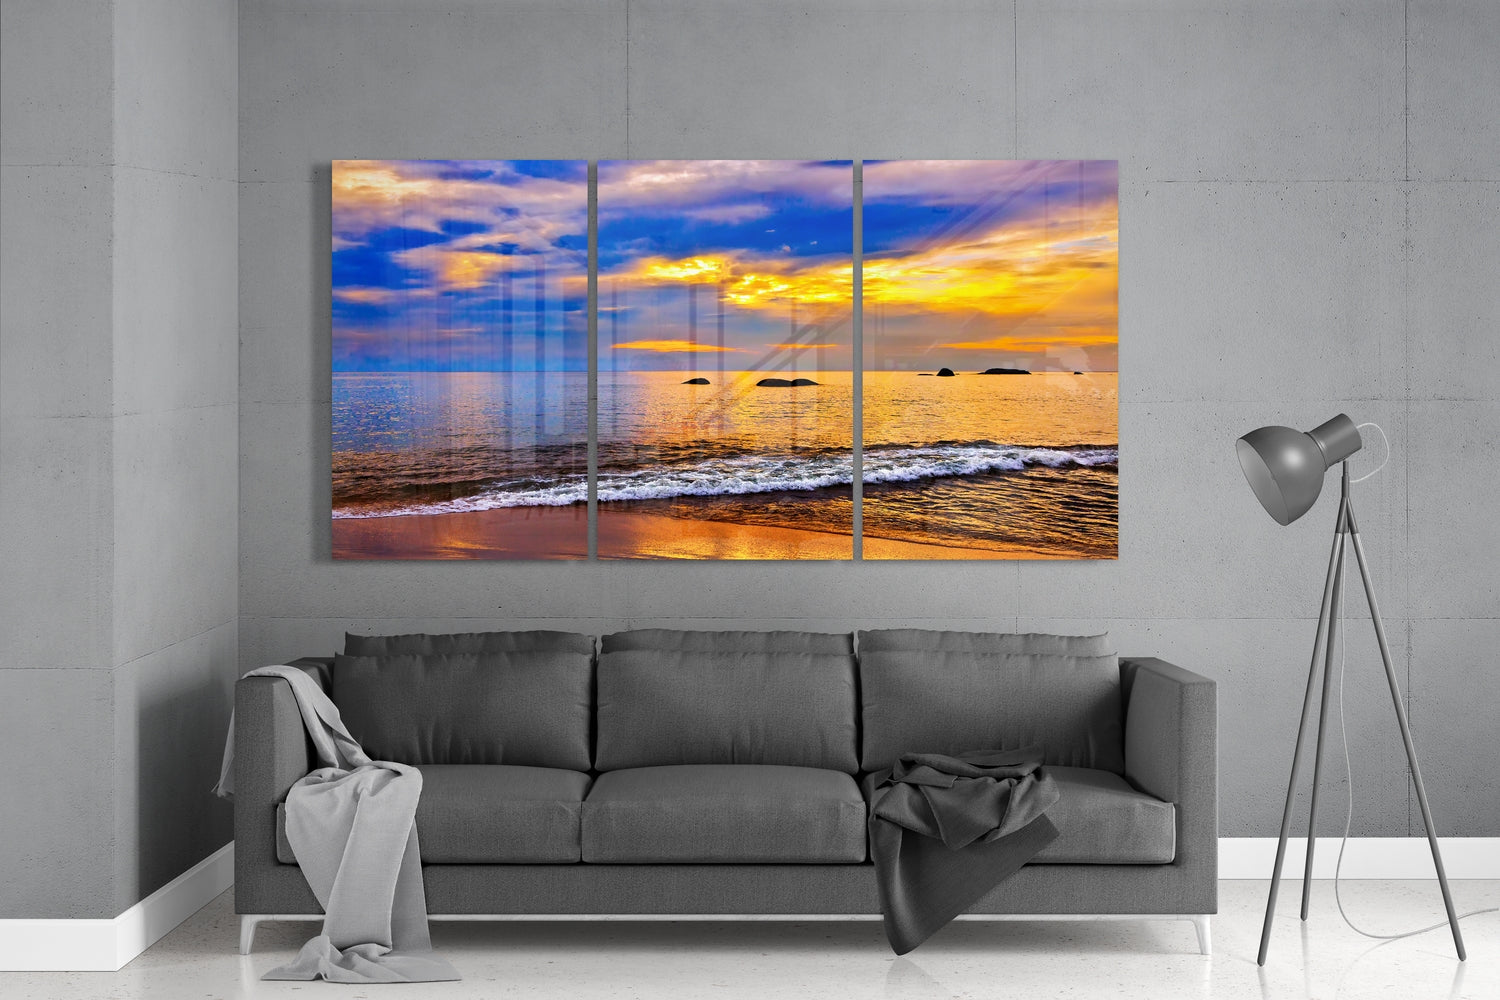 Sunset on the Beach Glass Wall Art – Insigne Art Design